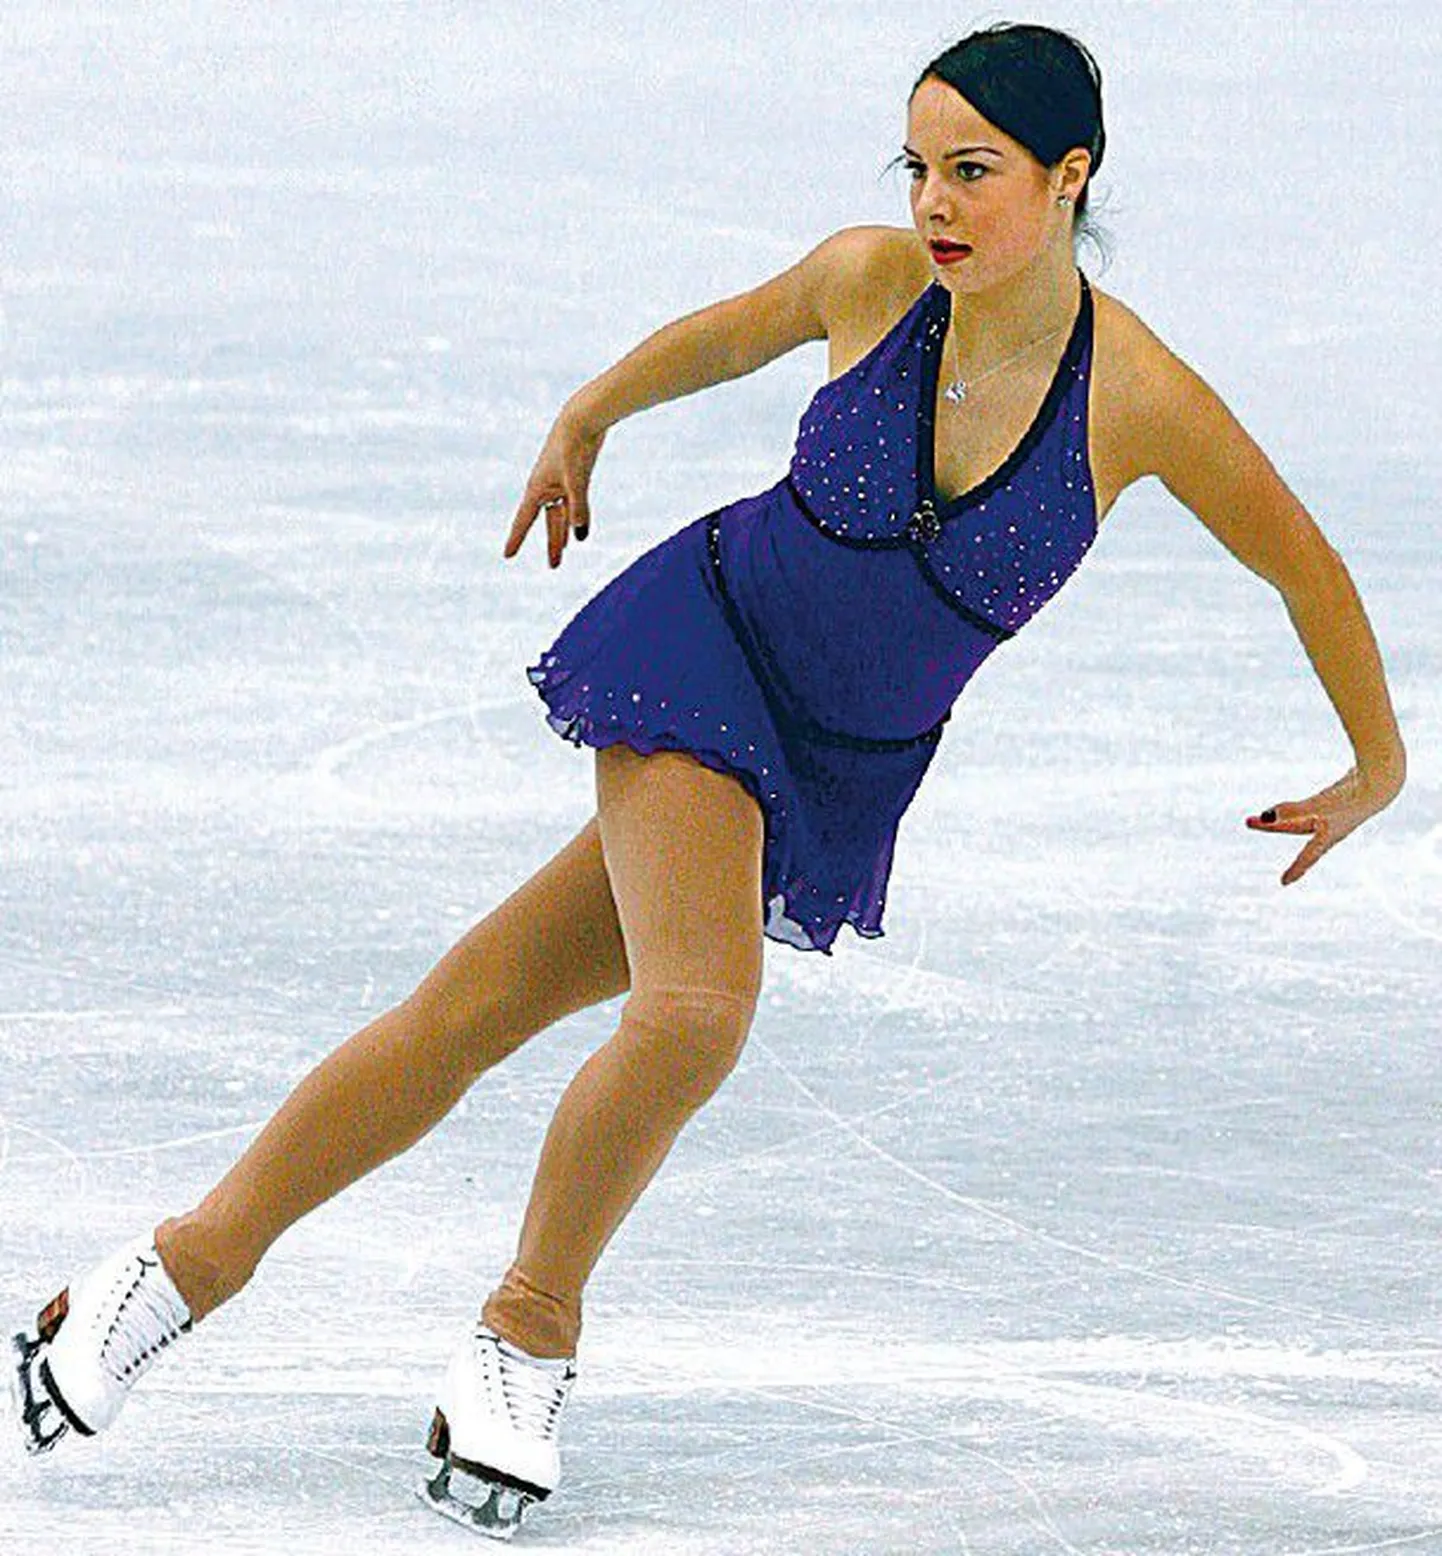 Eesti parim iluuisutaja Jelena Glebova saavutas Viinis toimunud mainekal võistlusel teise koha.